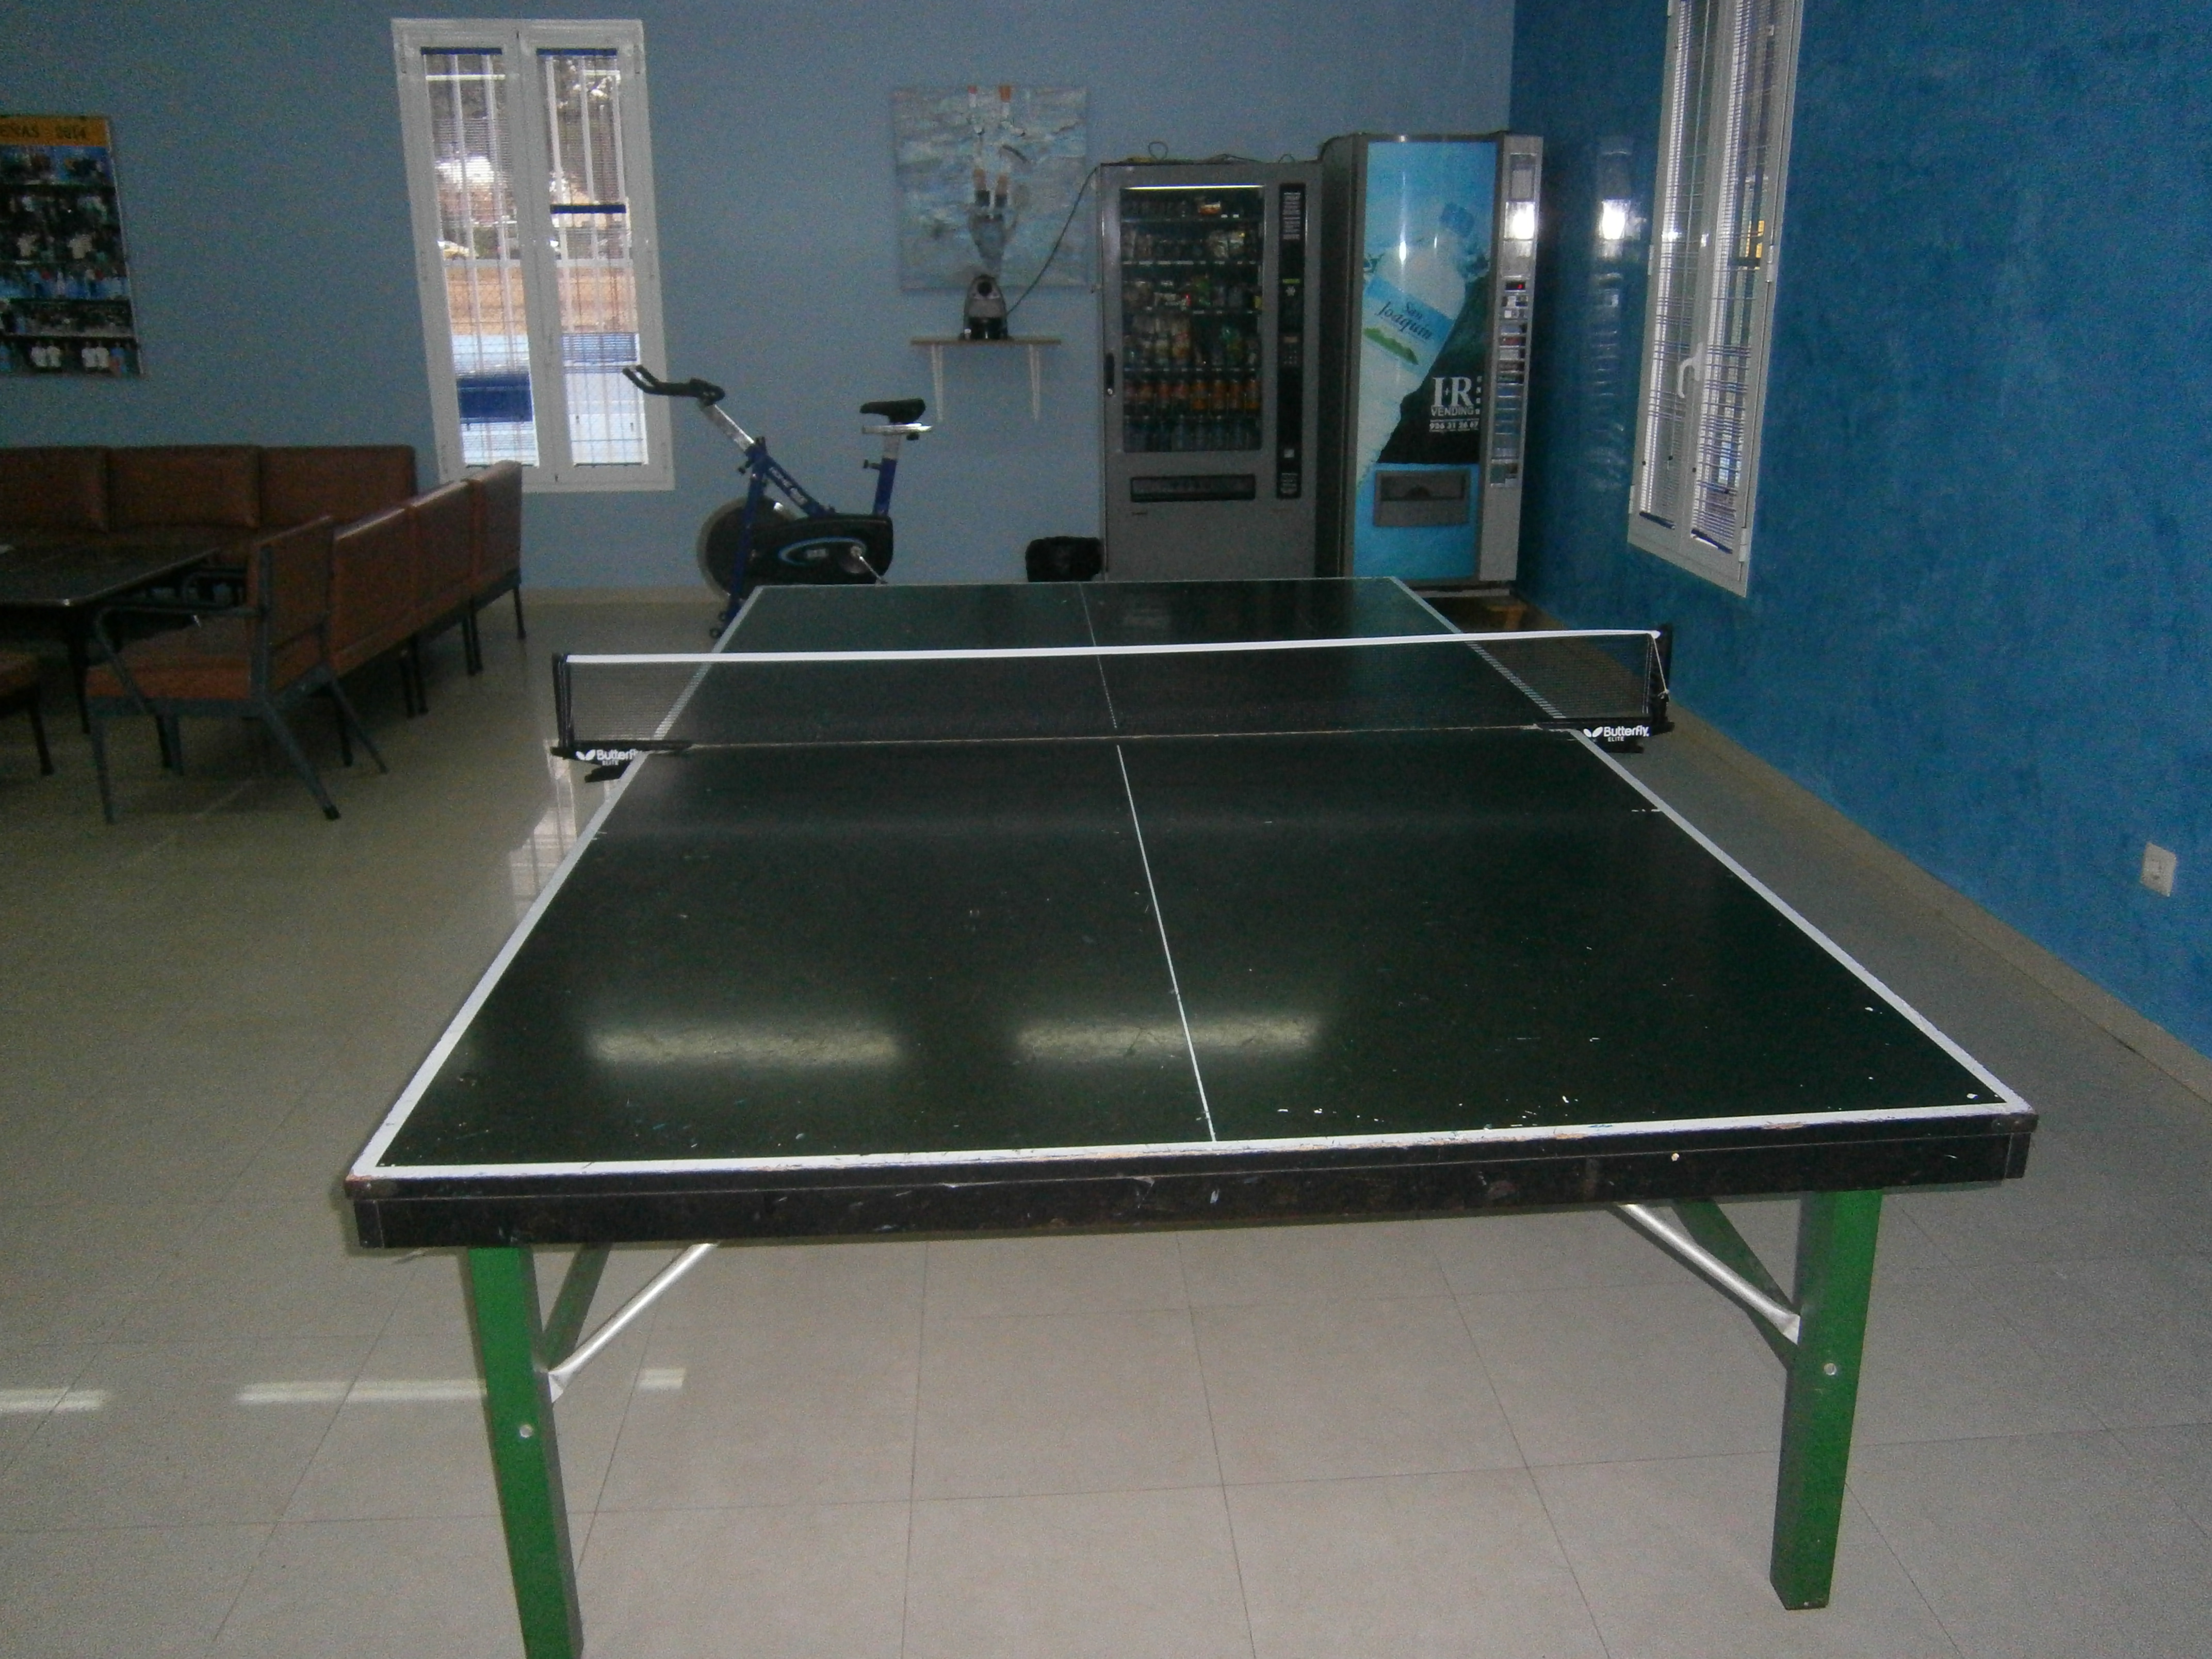 Una mesa de ping pong